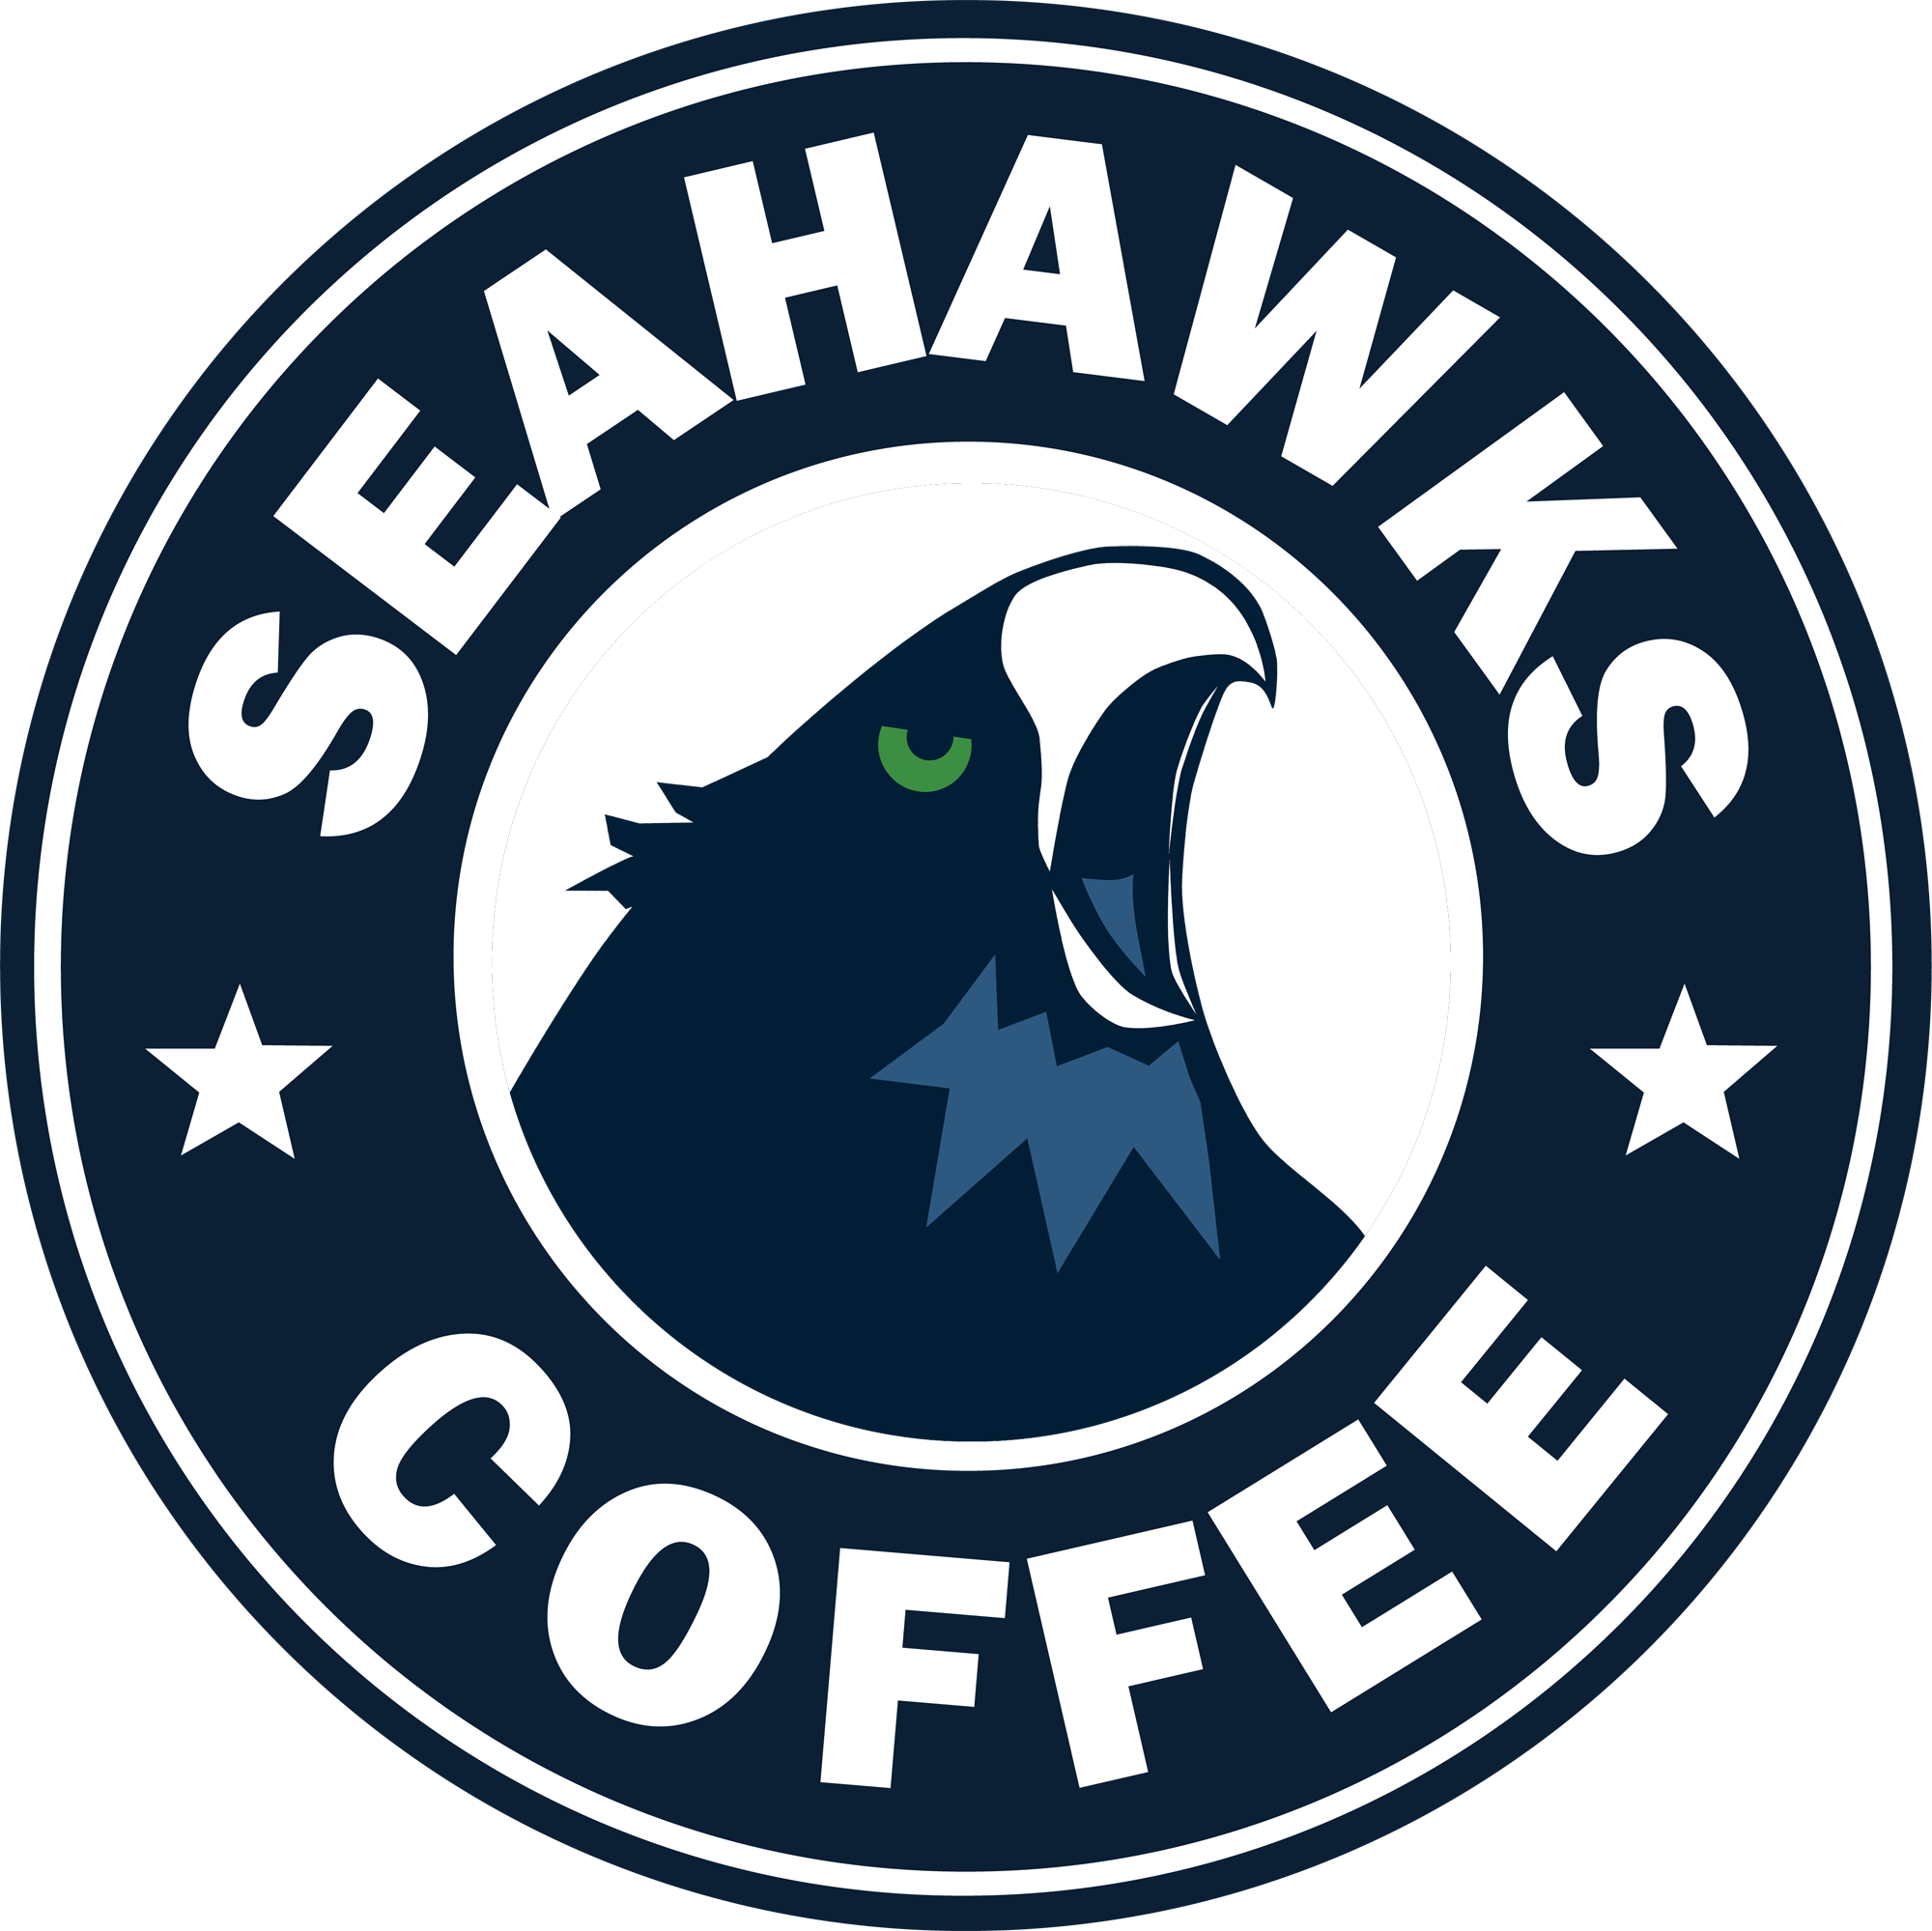 Seahawks coffee